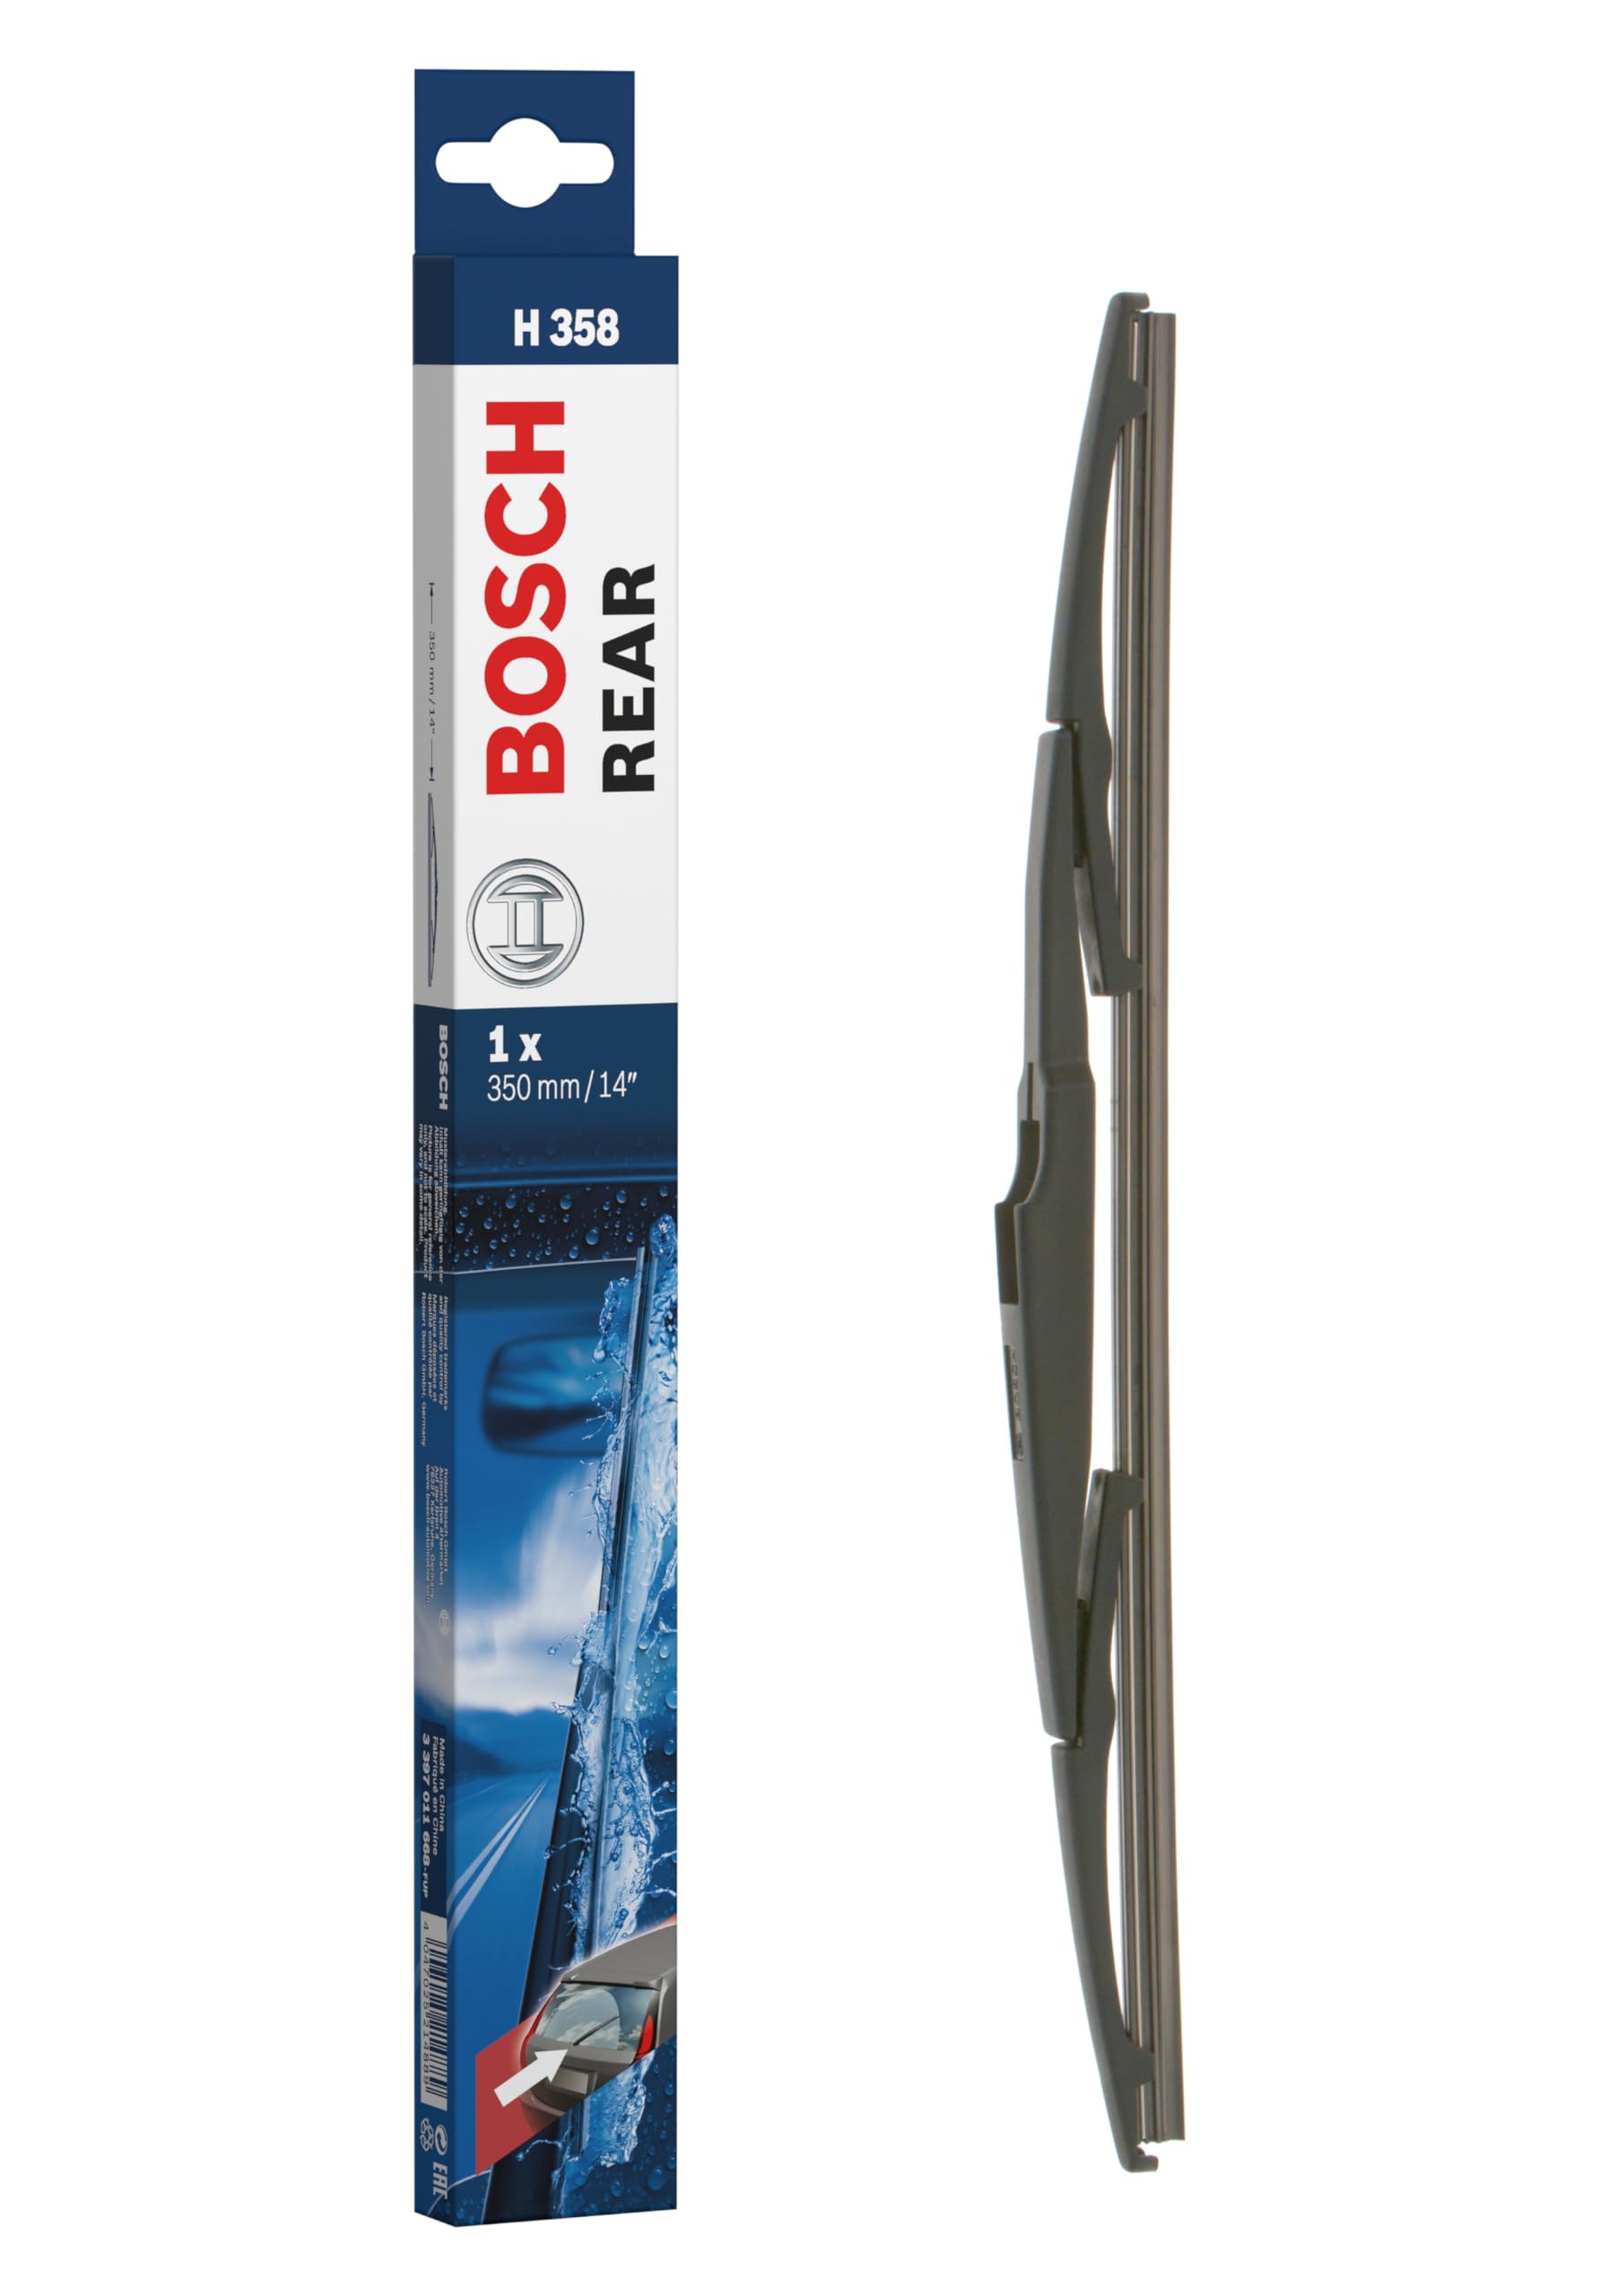 Bosch Scheibenwischer Rear H358, Länge: 350mm – Scheibenwischer für Heckscheibe von Bosch Automotive